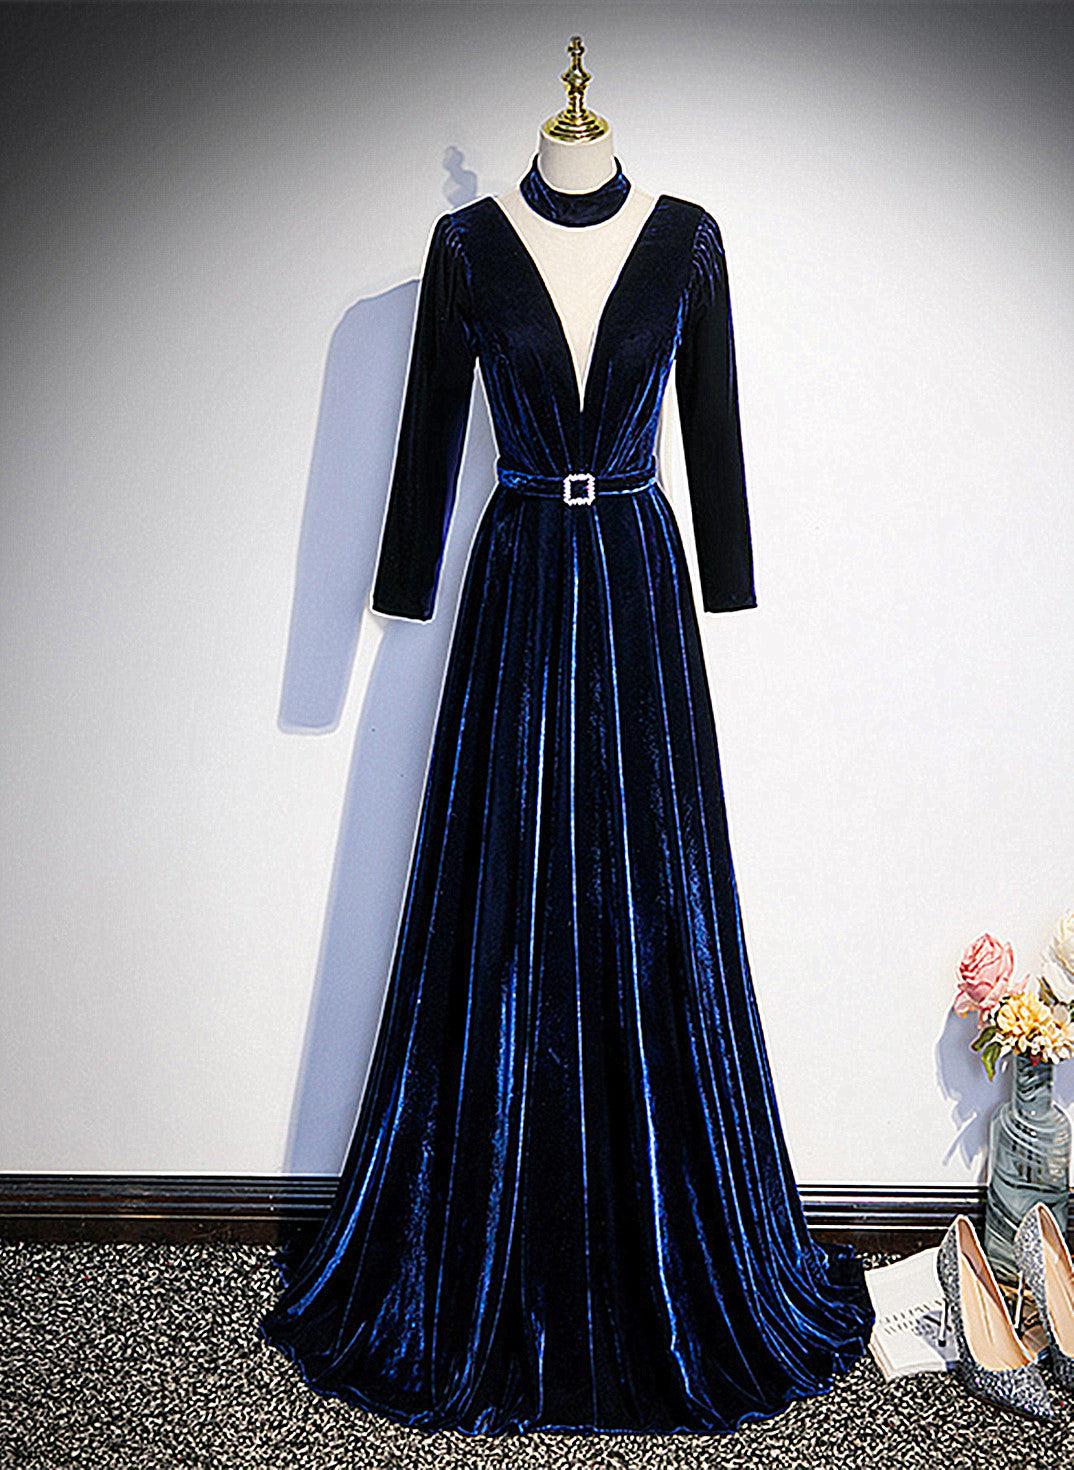 Blue Velvet Long Sleeves Floor Length Wedding Party Dress, Blue Formal Gown